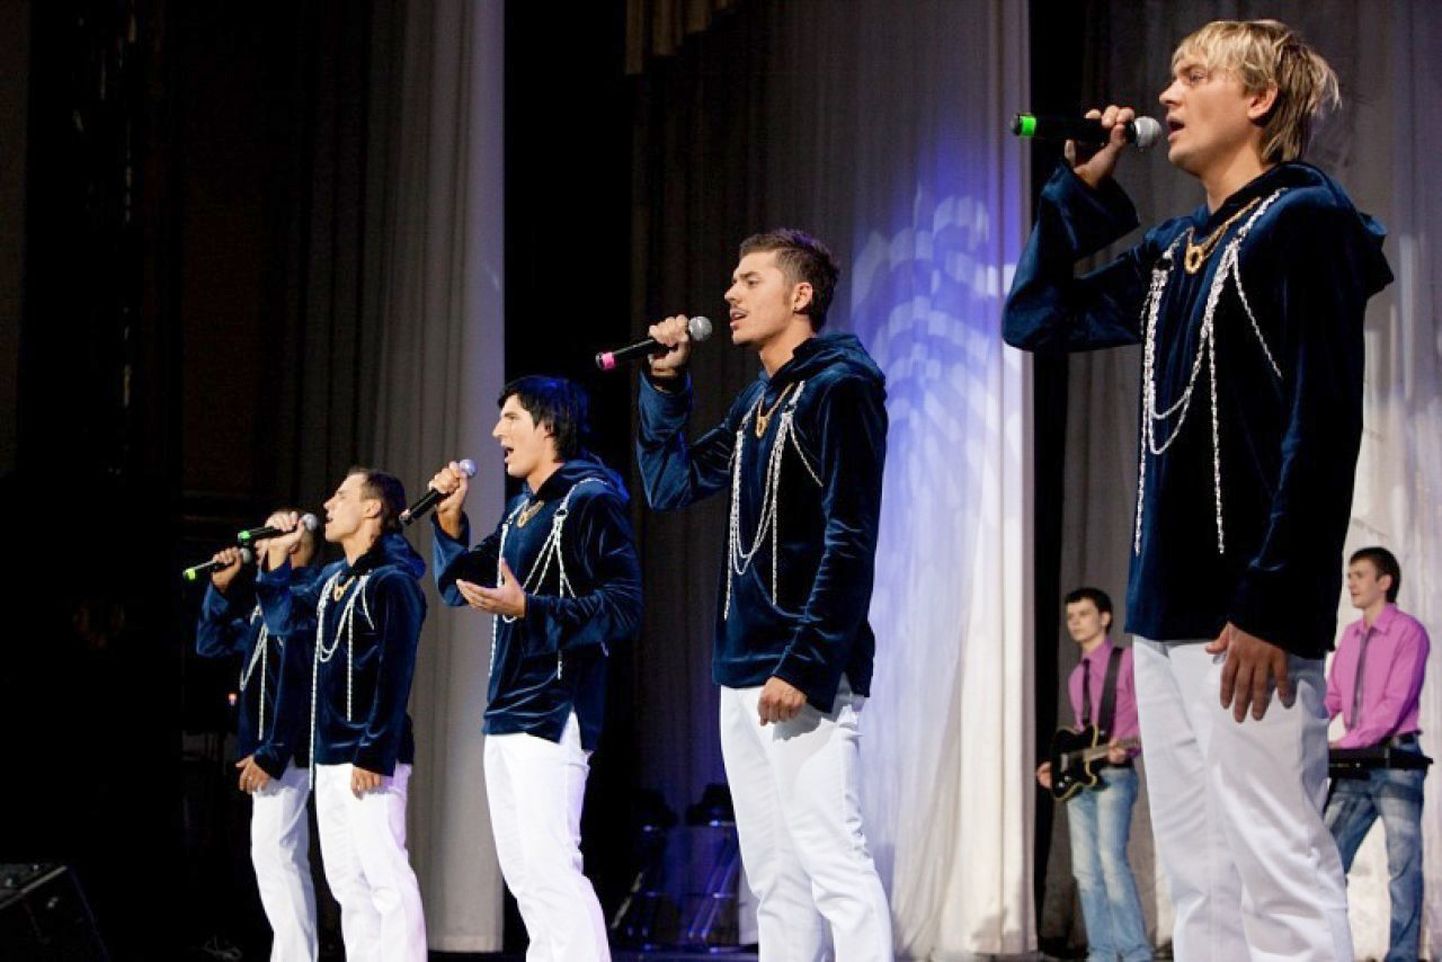 Belarusy lauljad esitavad palasid nii autori loodud seades kui ka a cappella vormis.